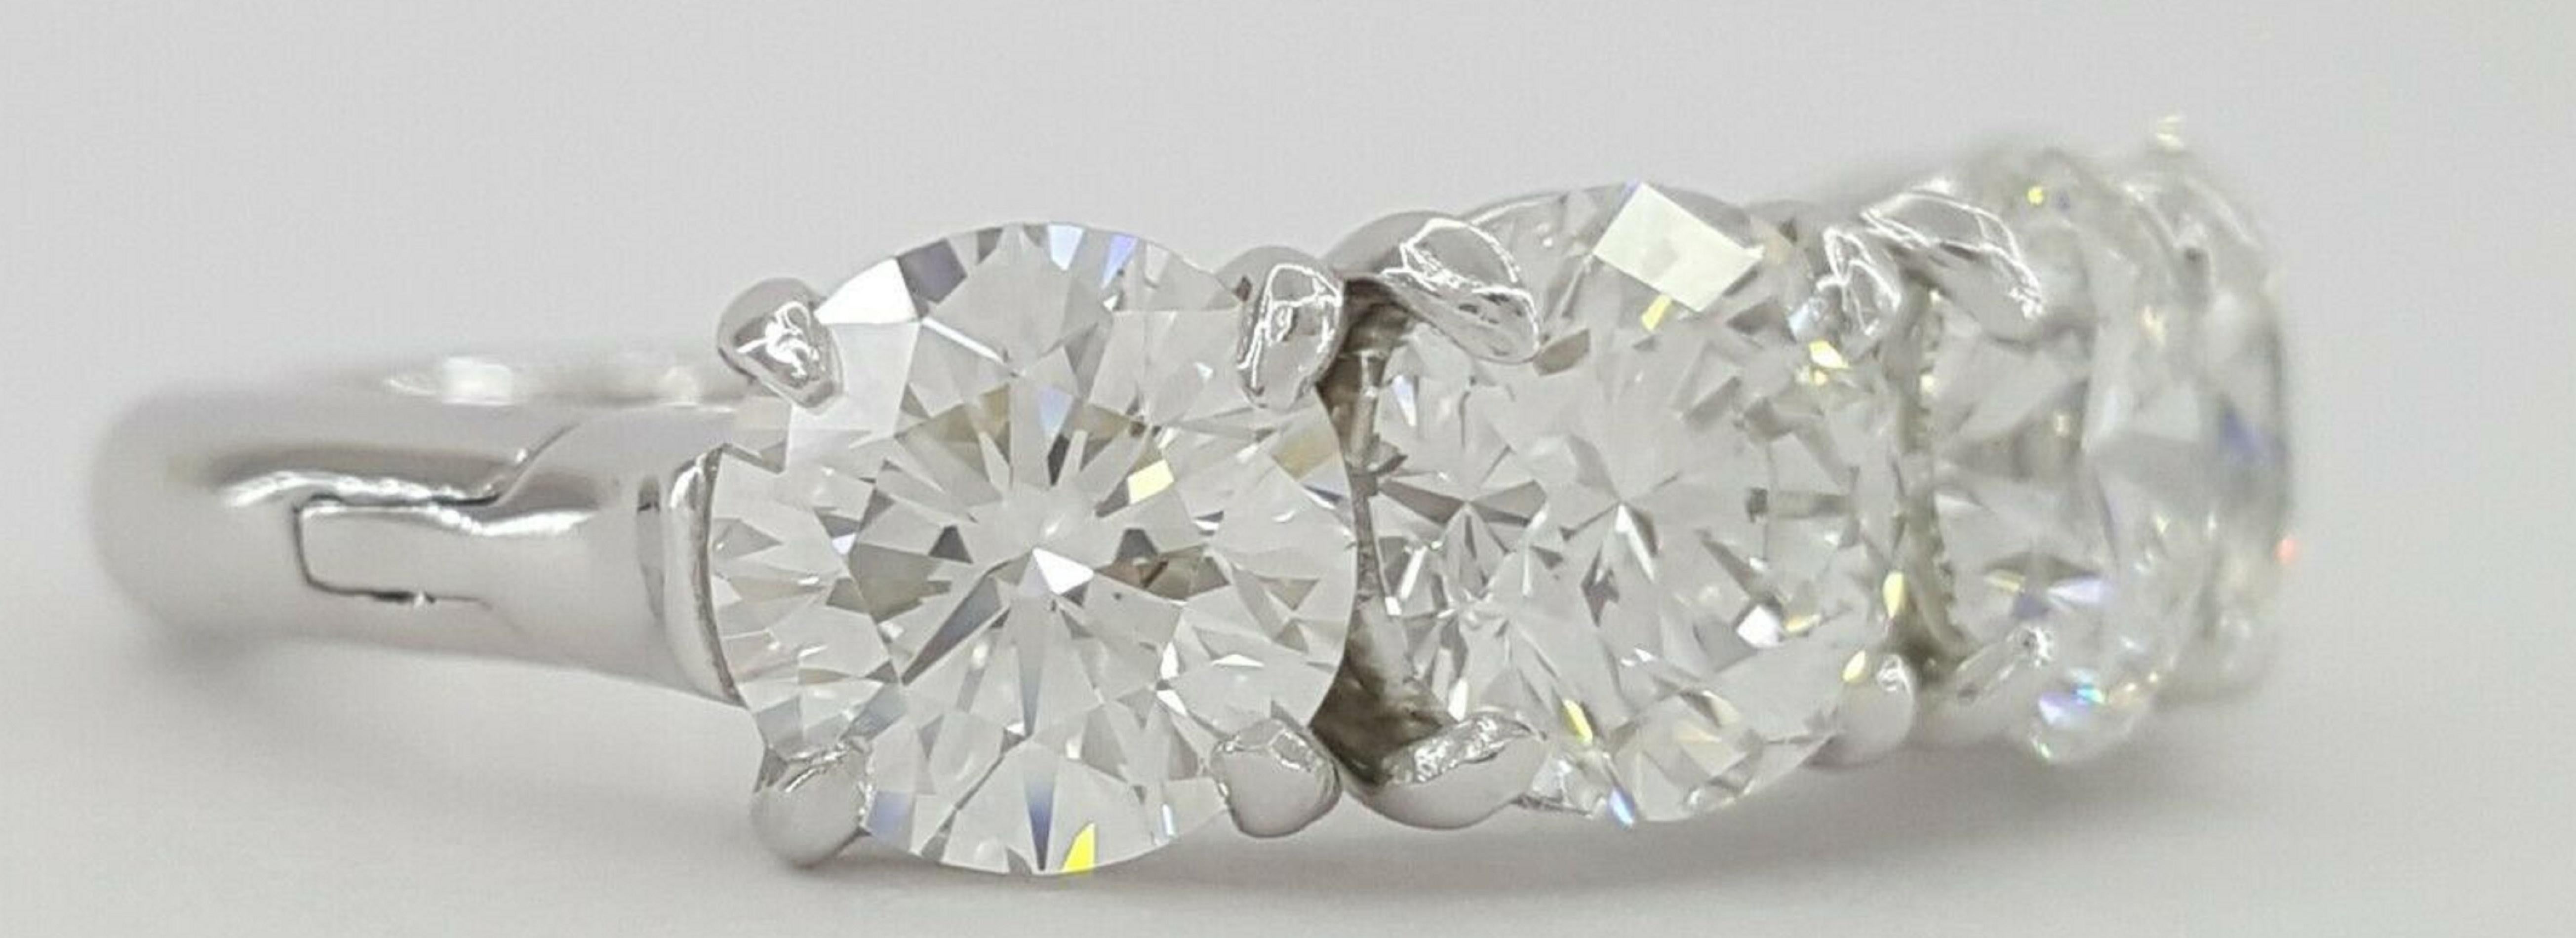 GIA Certified 3.50 Carat Round Brilliant Cut Diamond Wedding Band Ring
chaque diamant pèse 0,72-0,73 carats et a été certifié par la GIA